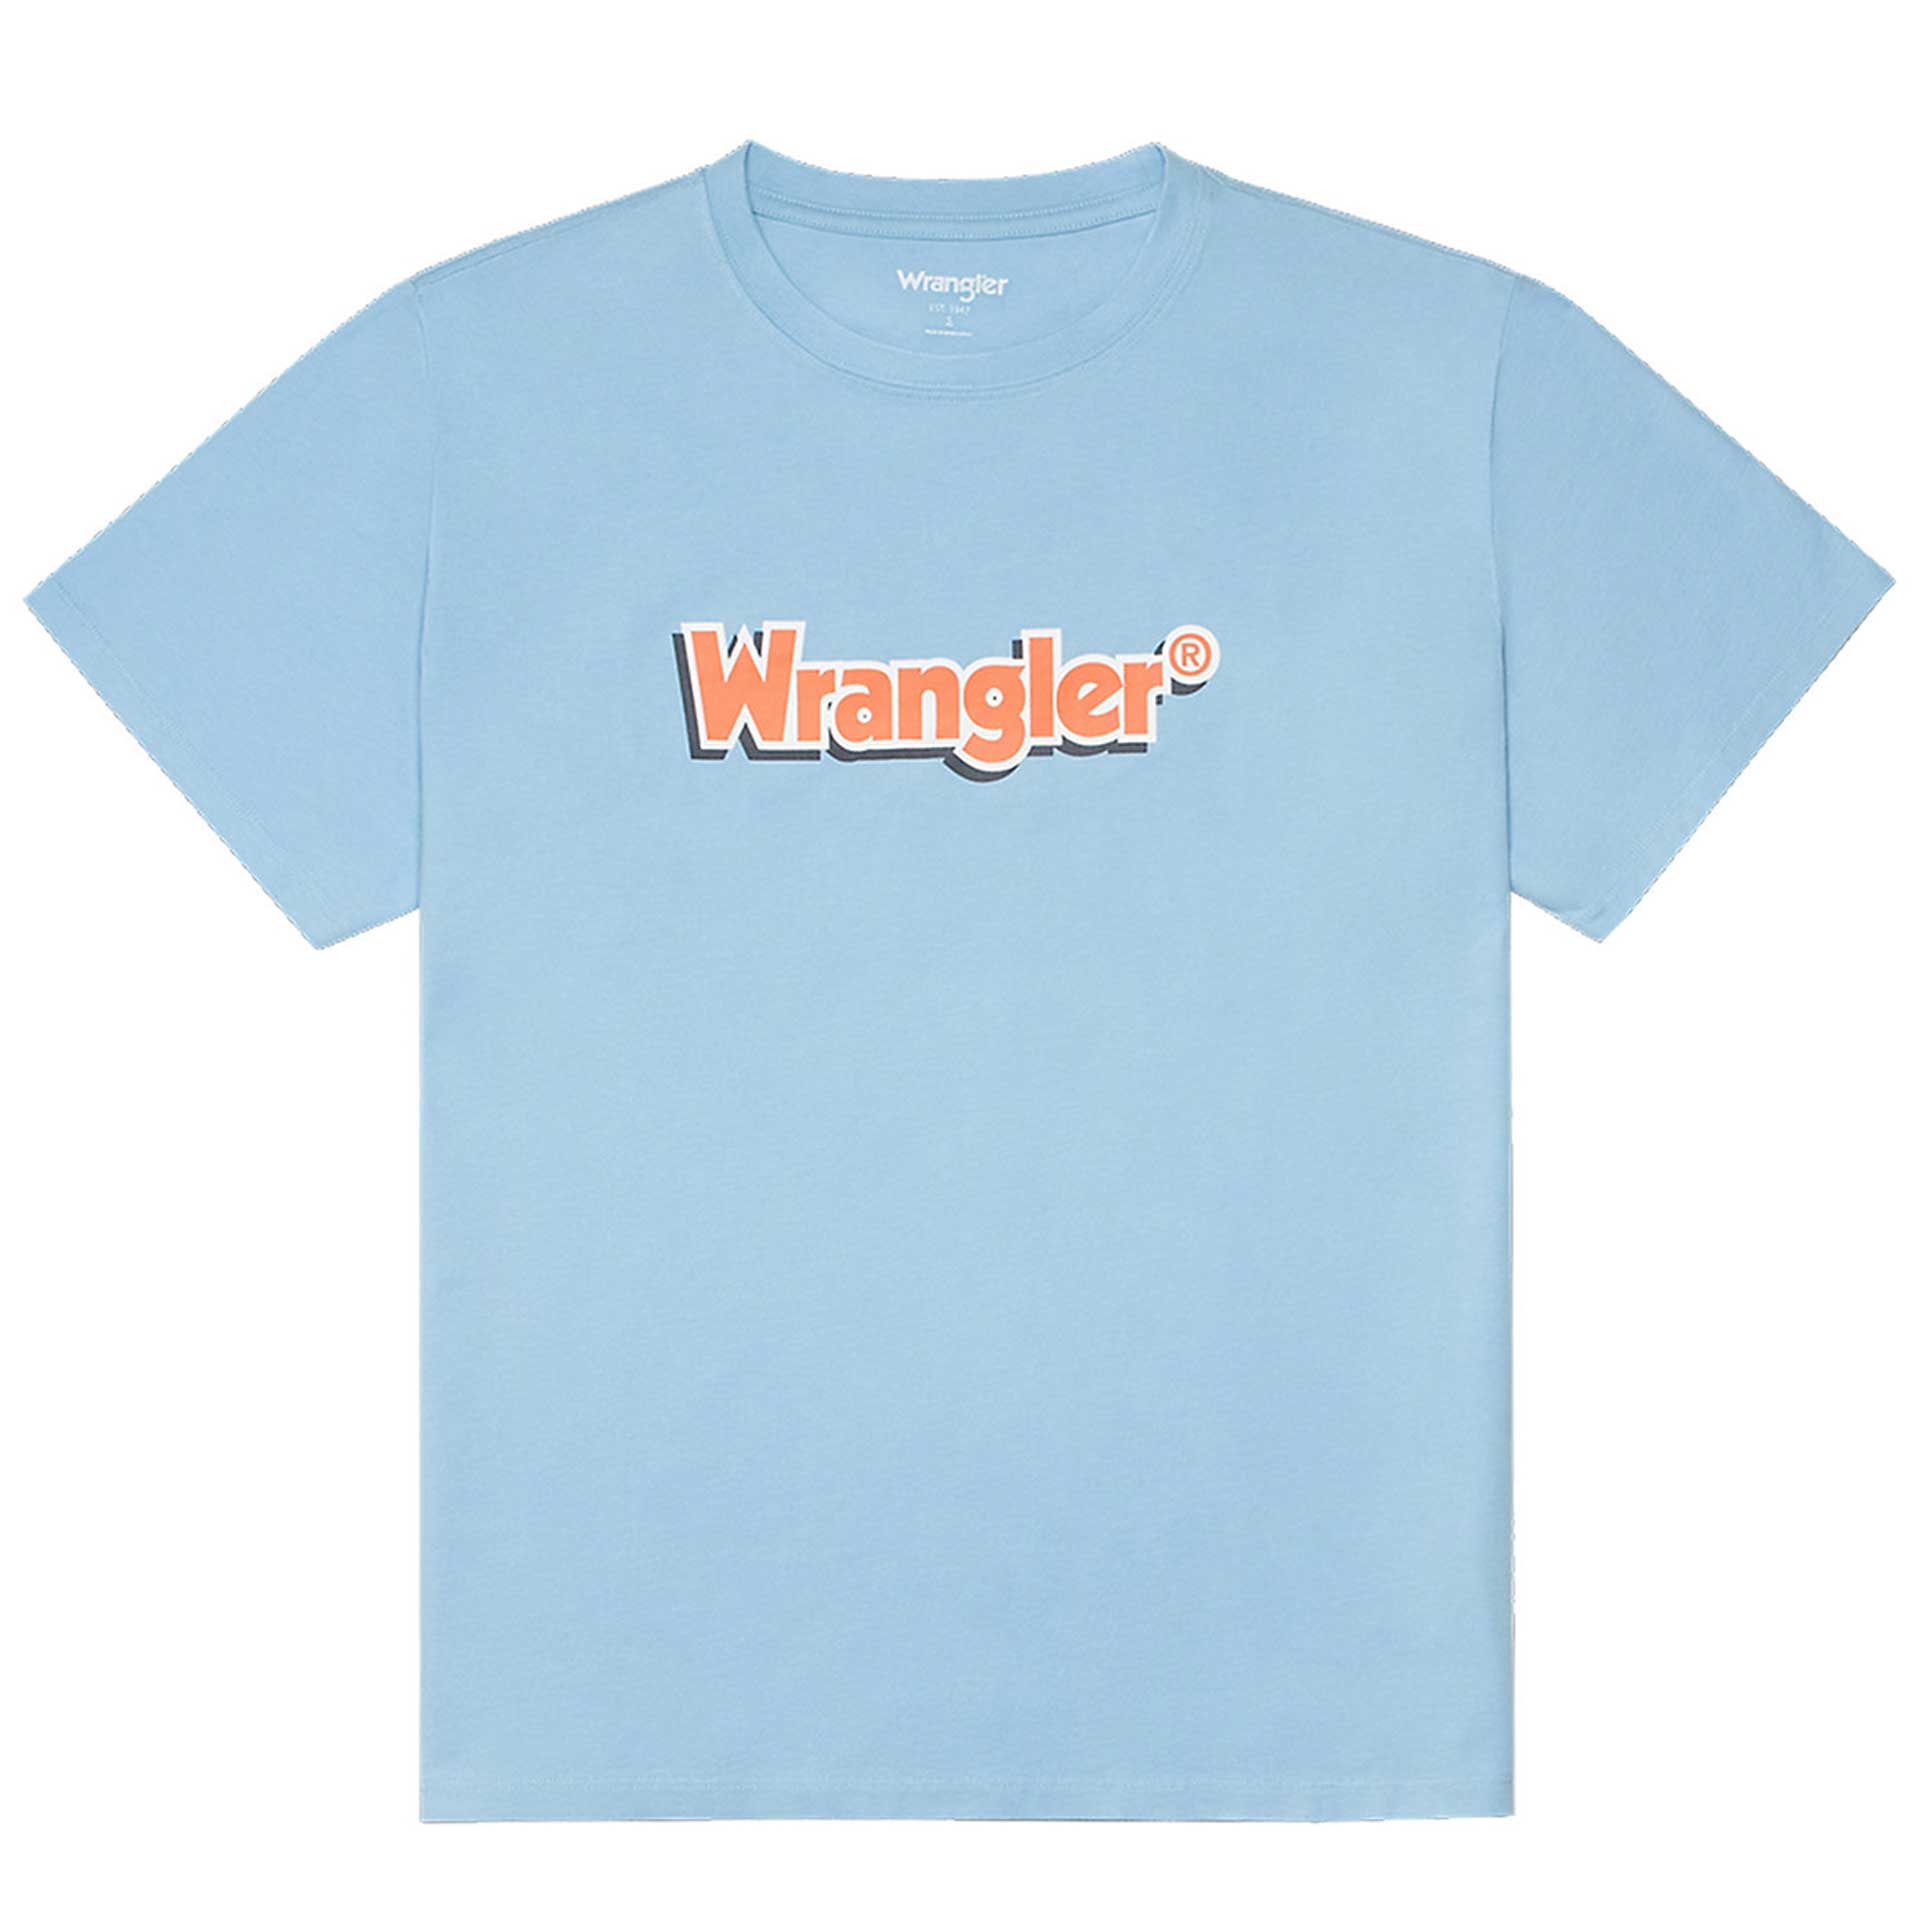 Wrangler T-shirt 1